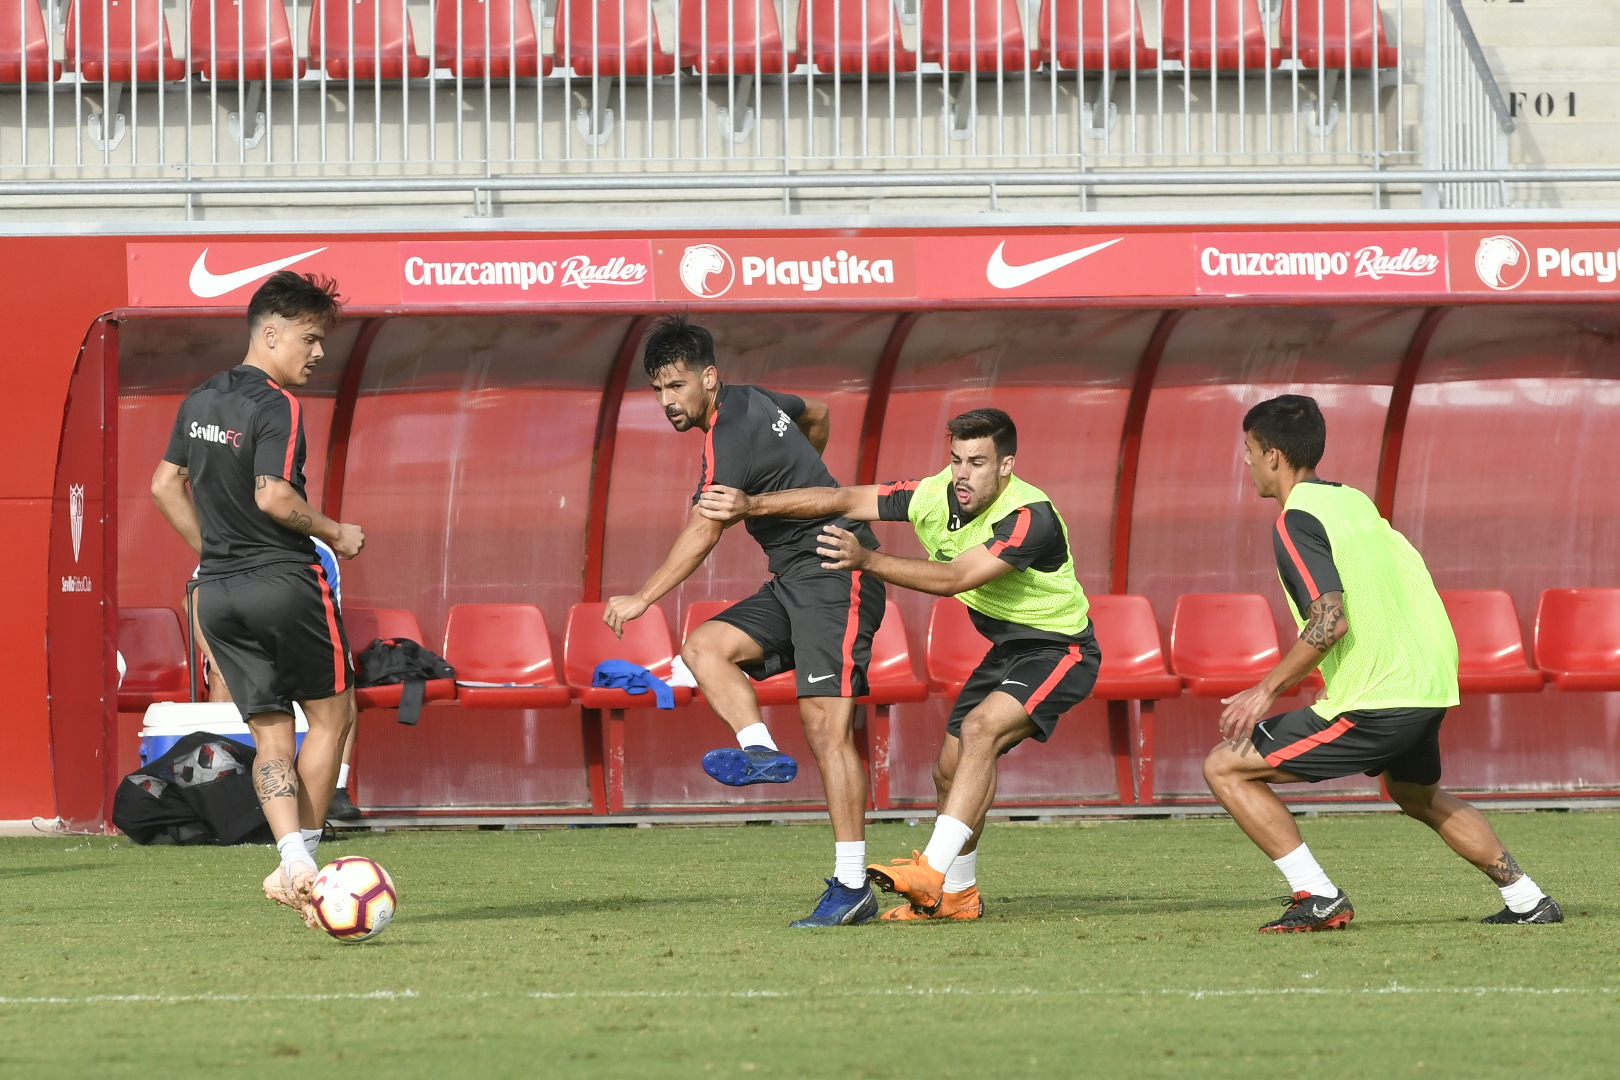 Practice match Sevilla against Sevilla B